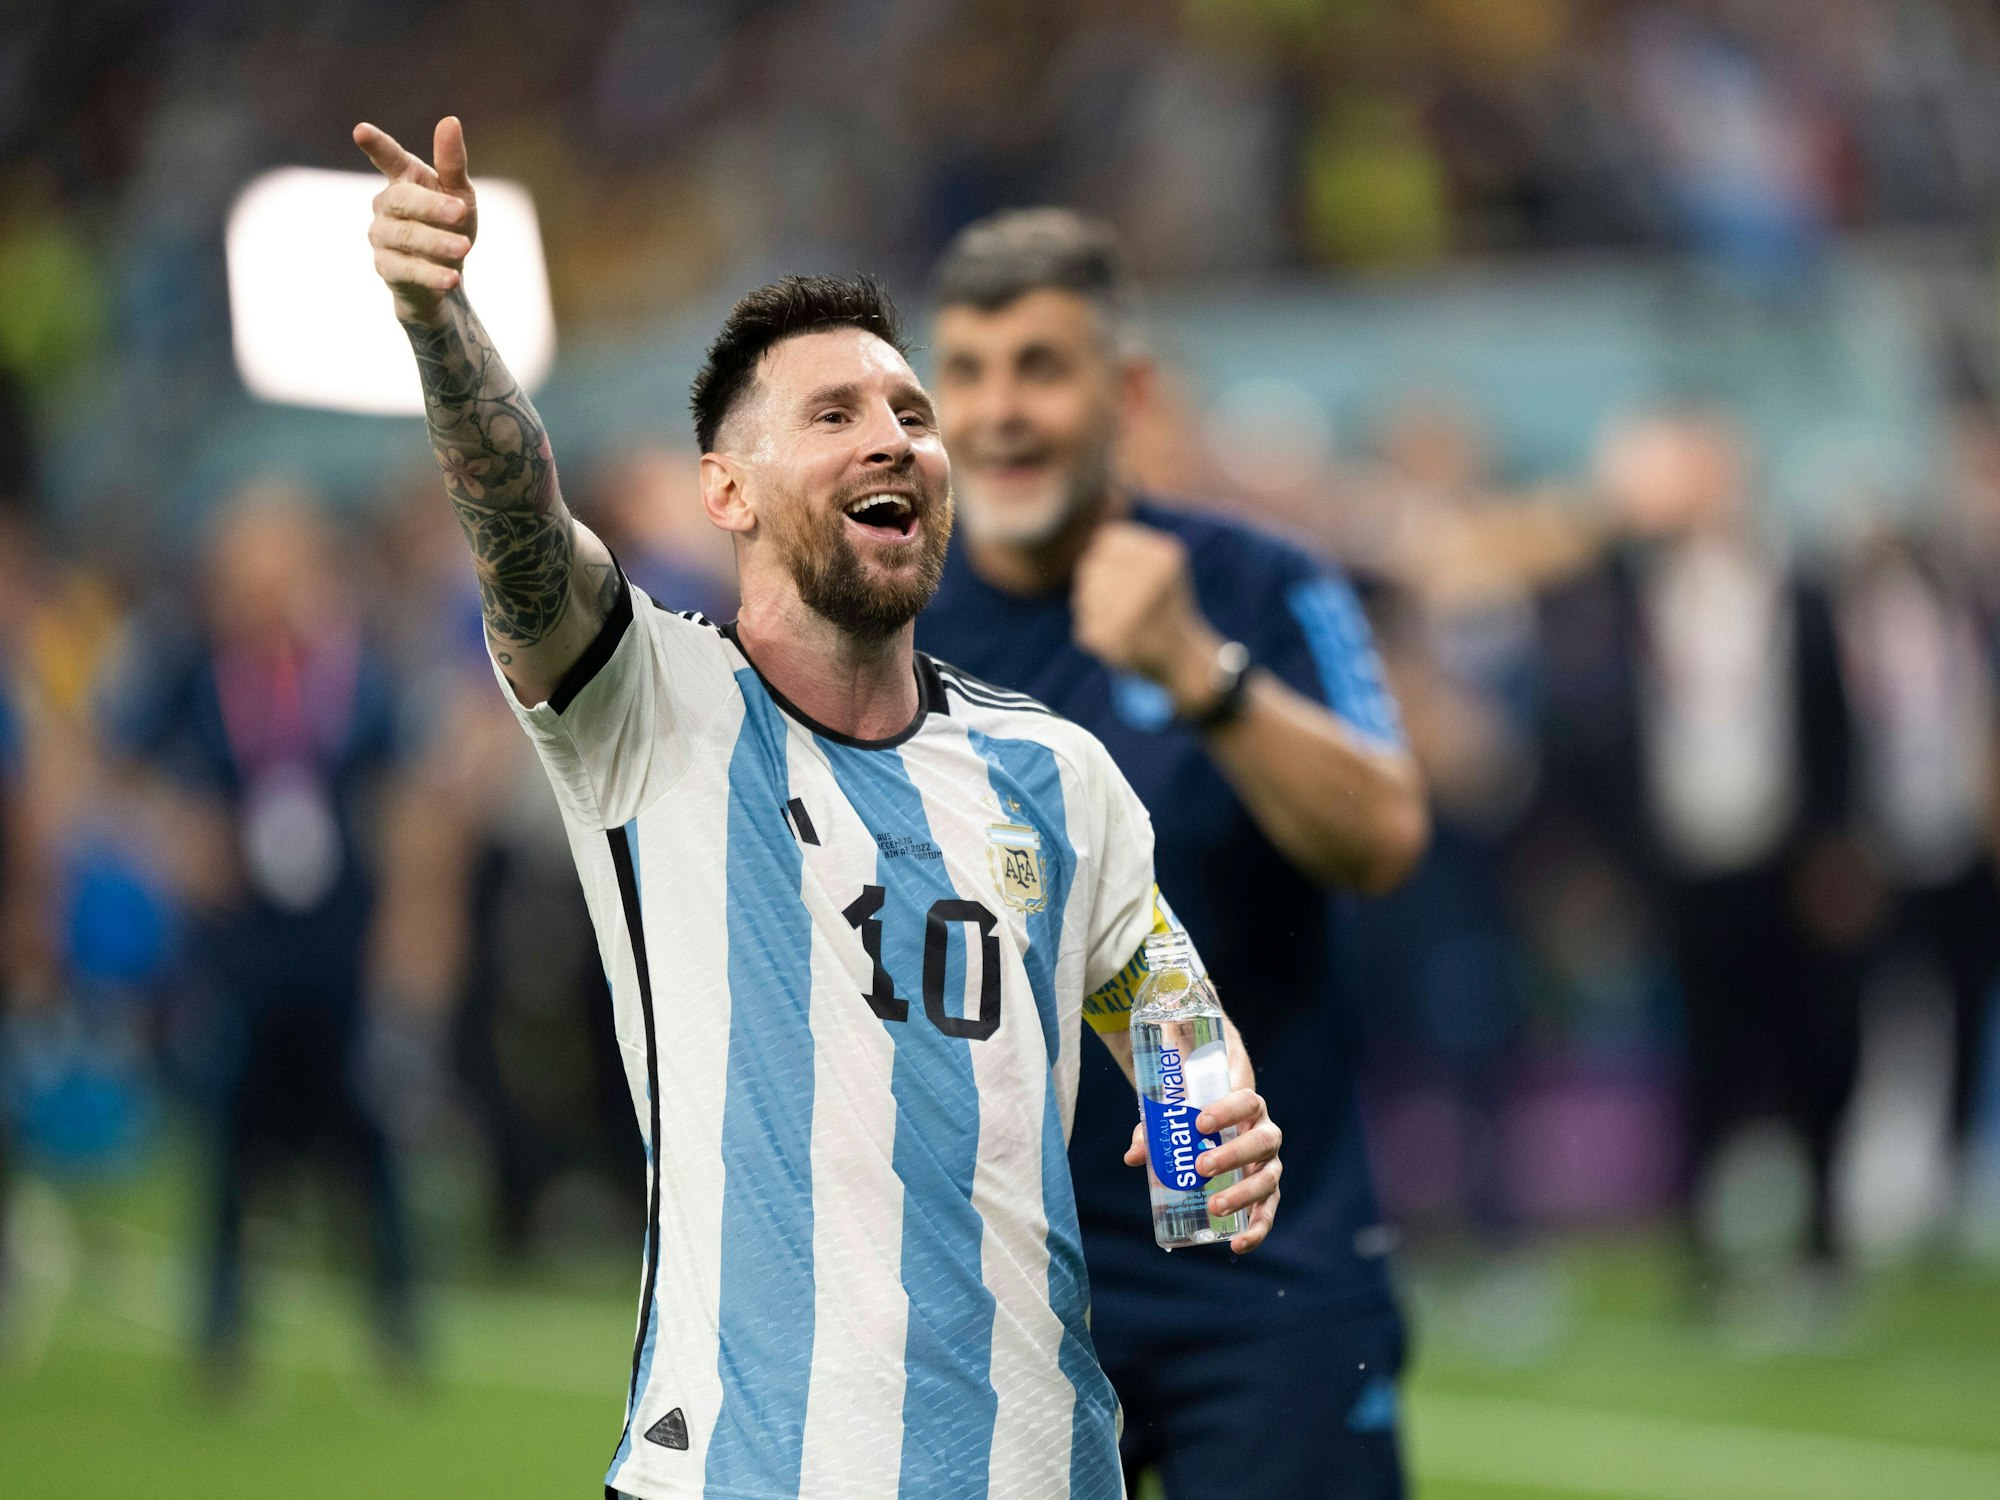 Lionel Messi feiert nach dem Spiel.